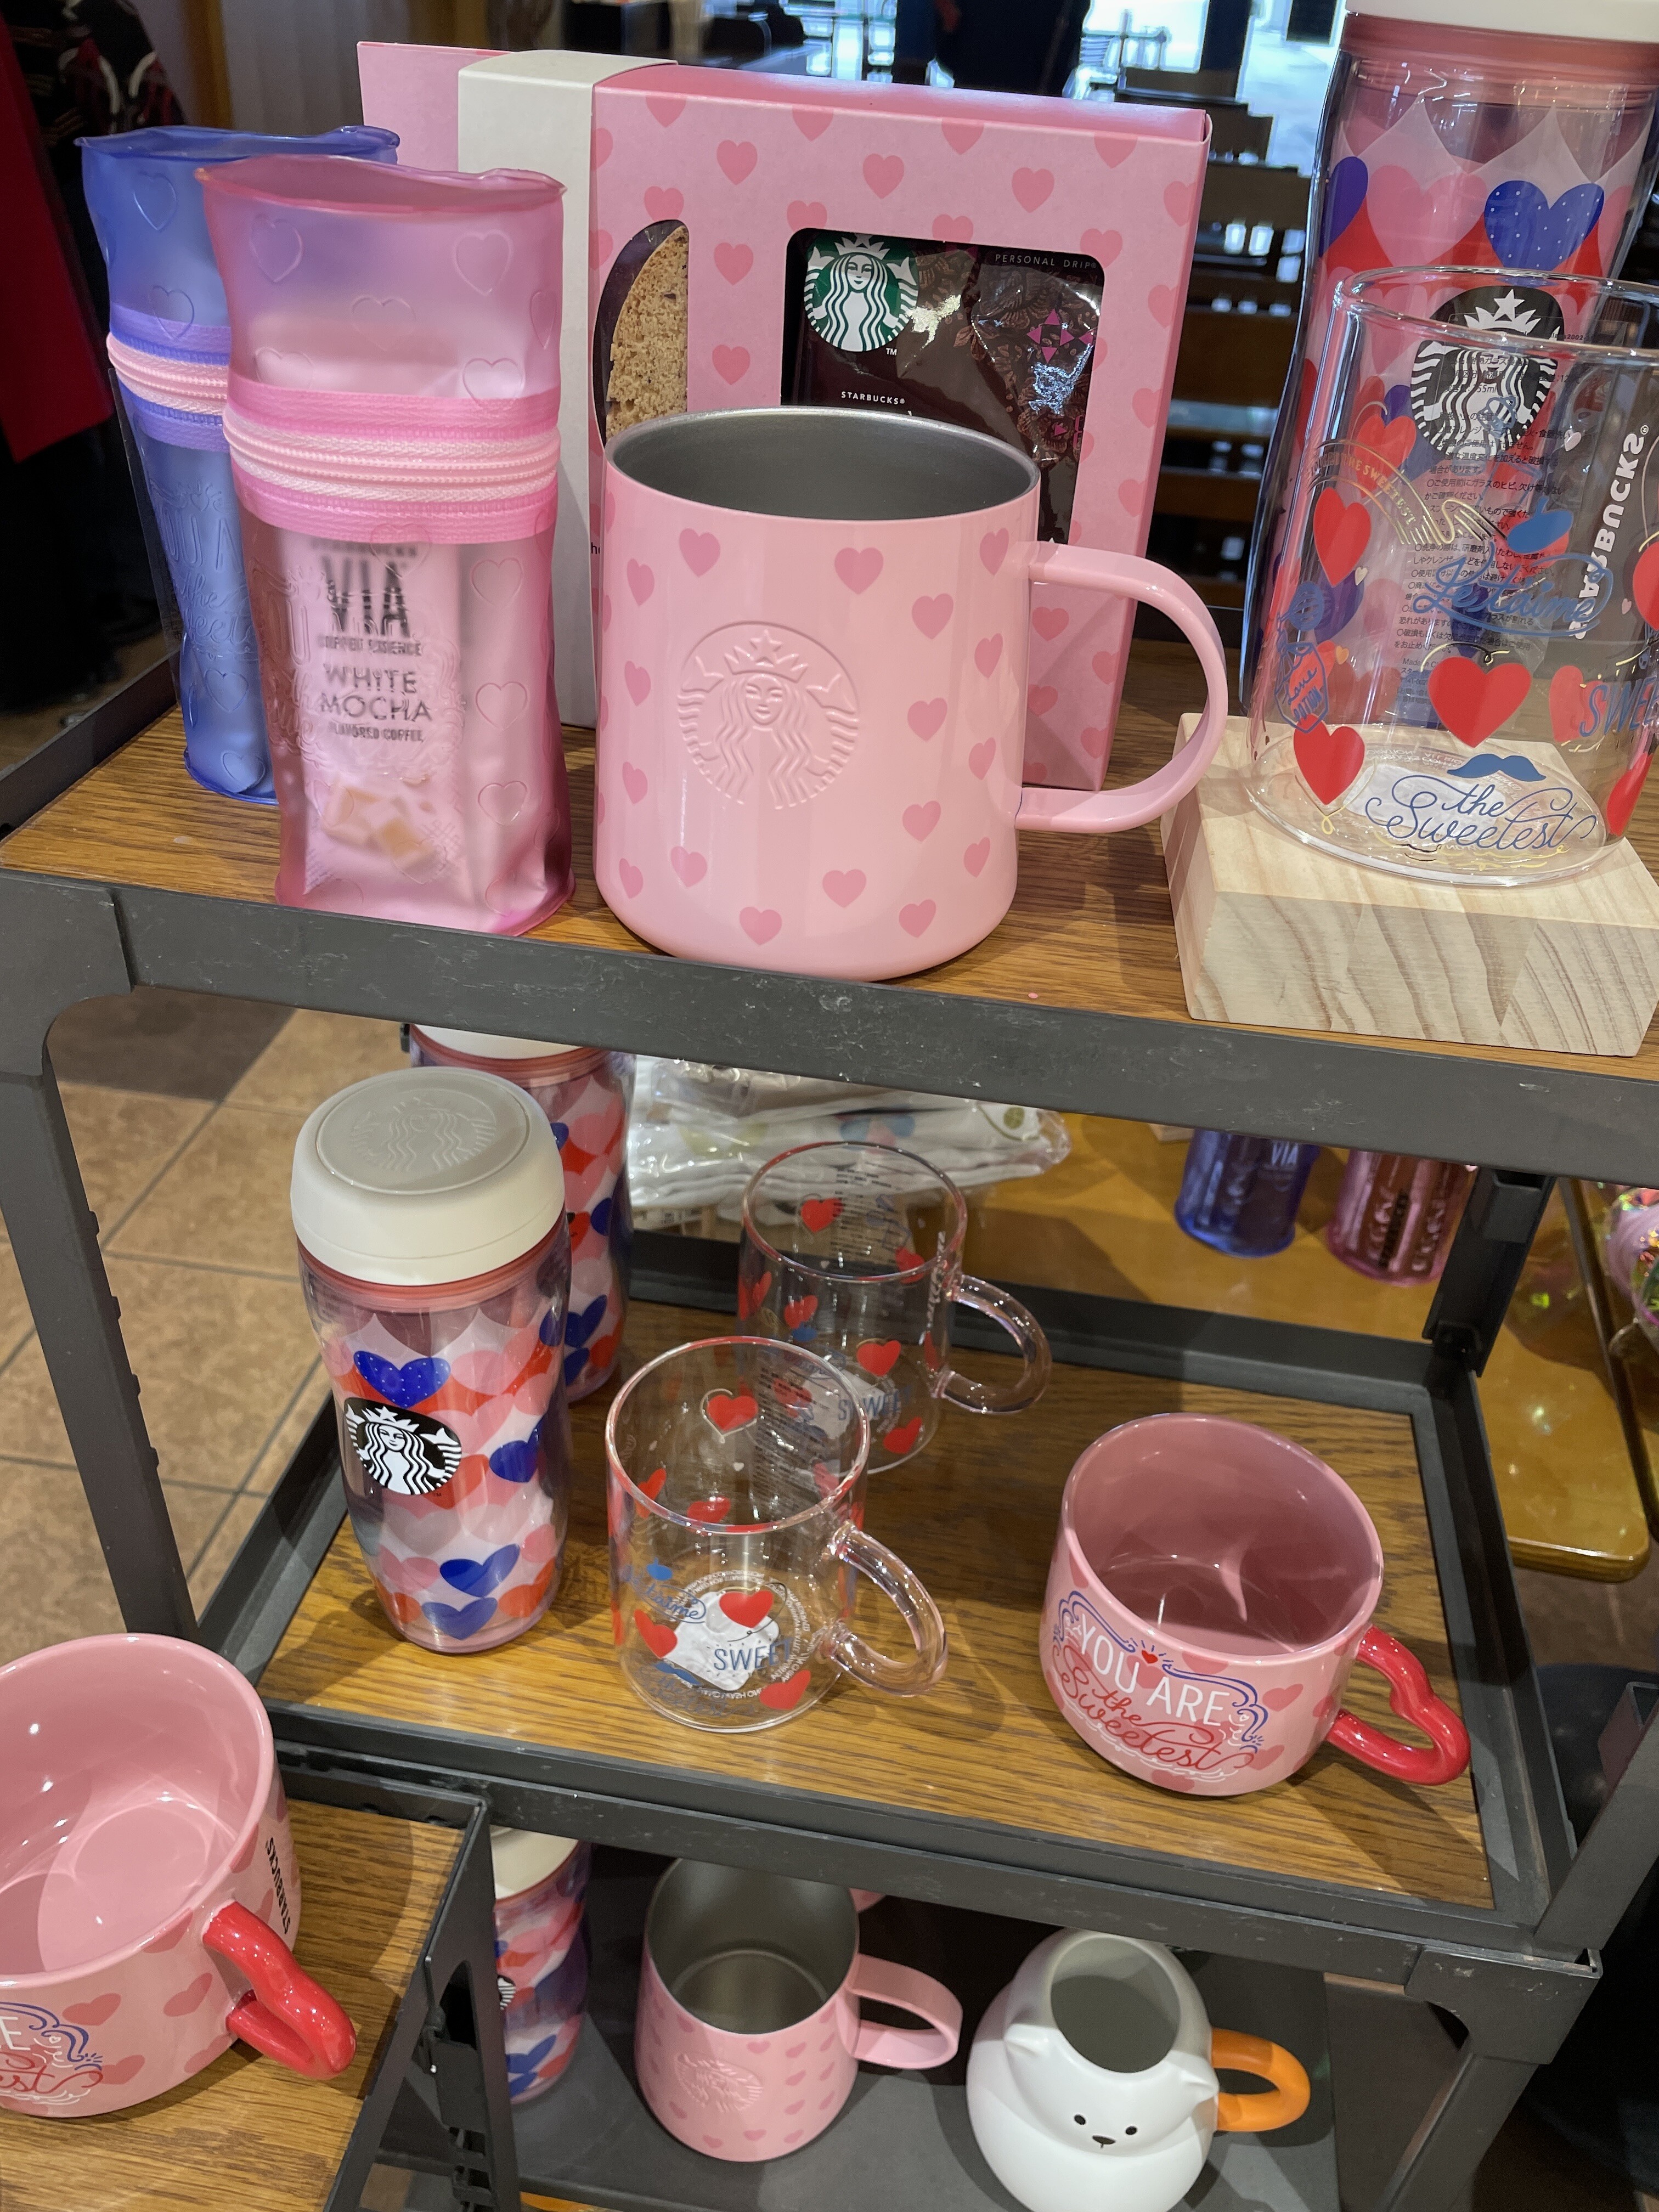 スターバックスコーヒーイオン北谷店でバレンタイングッズのタンブラーやマグカップが発売されてました 美ら浜つーしん 沖縄県北谷町の地域情報サイト